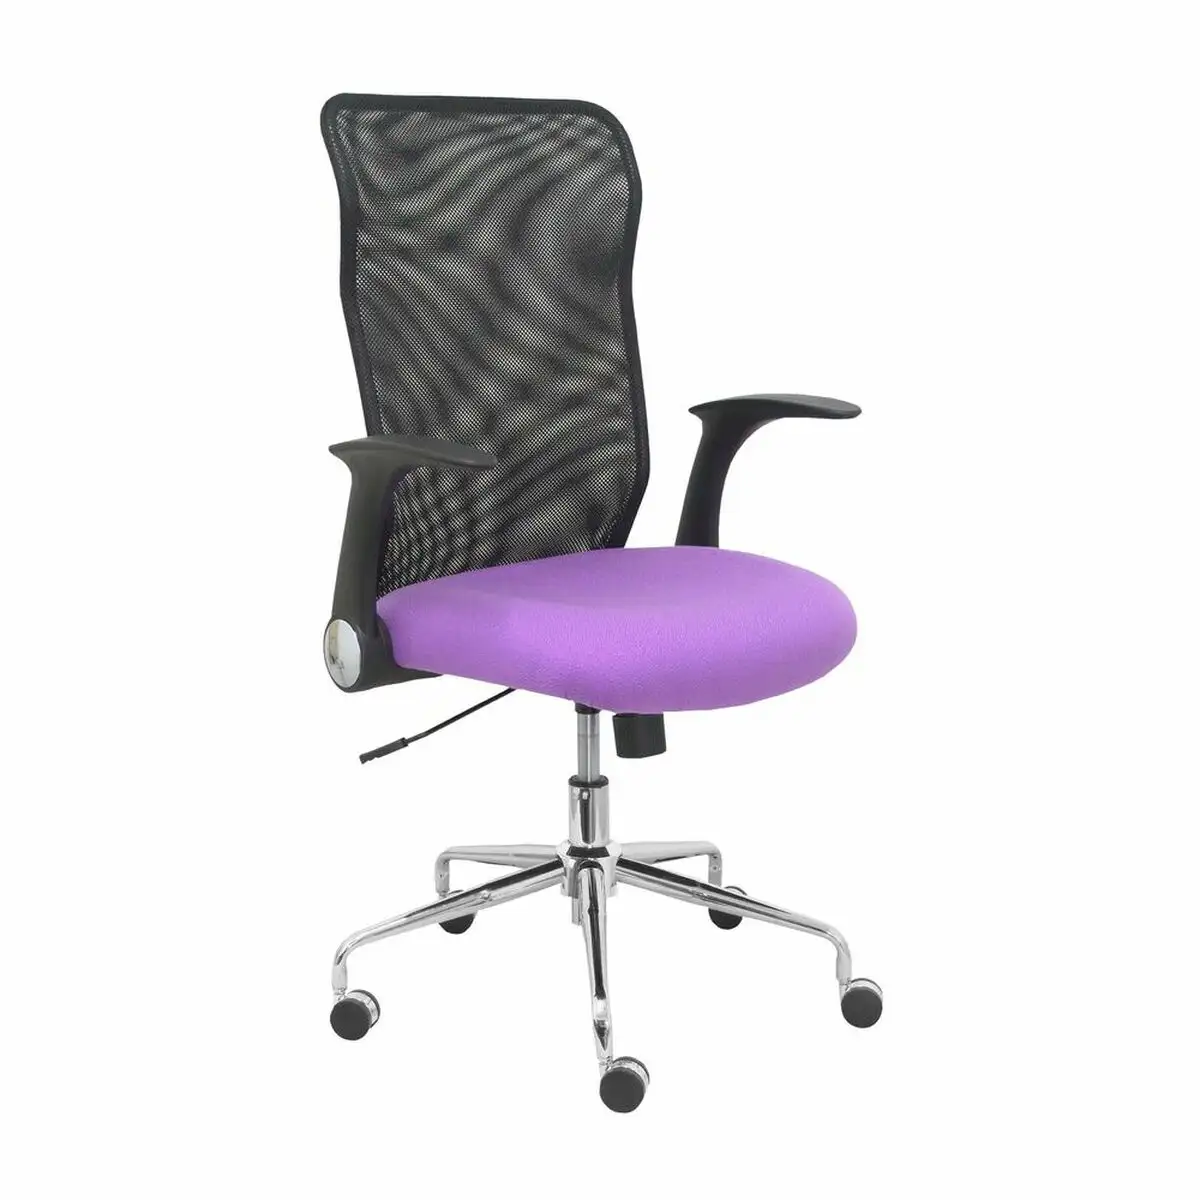 Chaise de bureau minaya p c 1bali82 violet lila_9791. DIAYTAR SENEGAL - Là où l'Élégance Devient un Mode de Vie. Naviguez à travers notre gamme et choisissez des produits qui apportent une touche raffinée à votre quotidien.